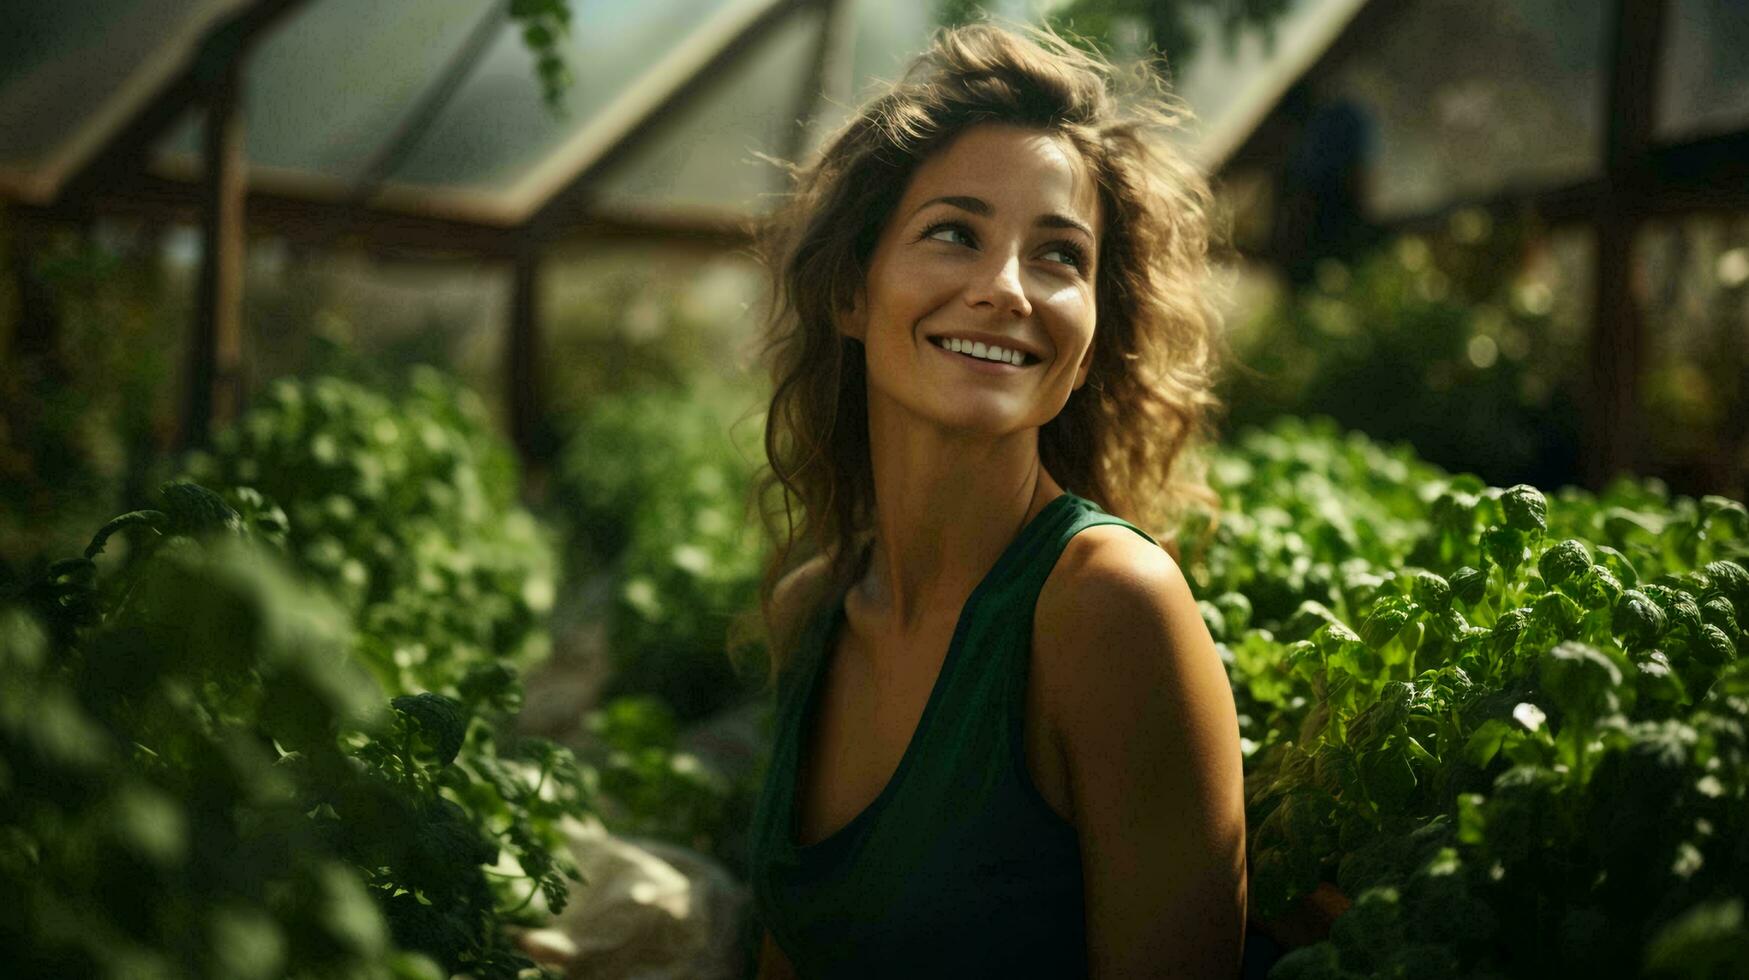 magnifique Jeune femme dans une serre ou conservatoire avec vert les plantes. concept agriculture Naturel éco écologiquement amical des produits photo